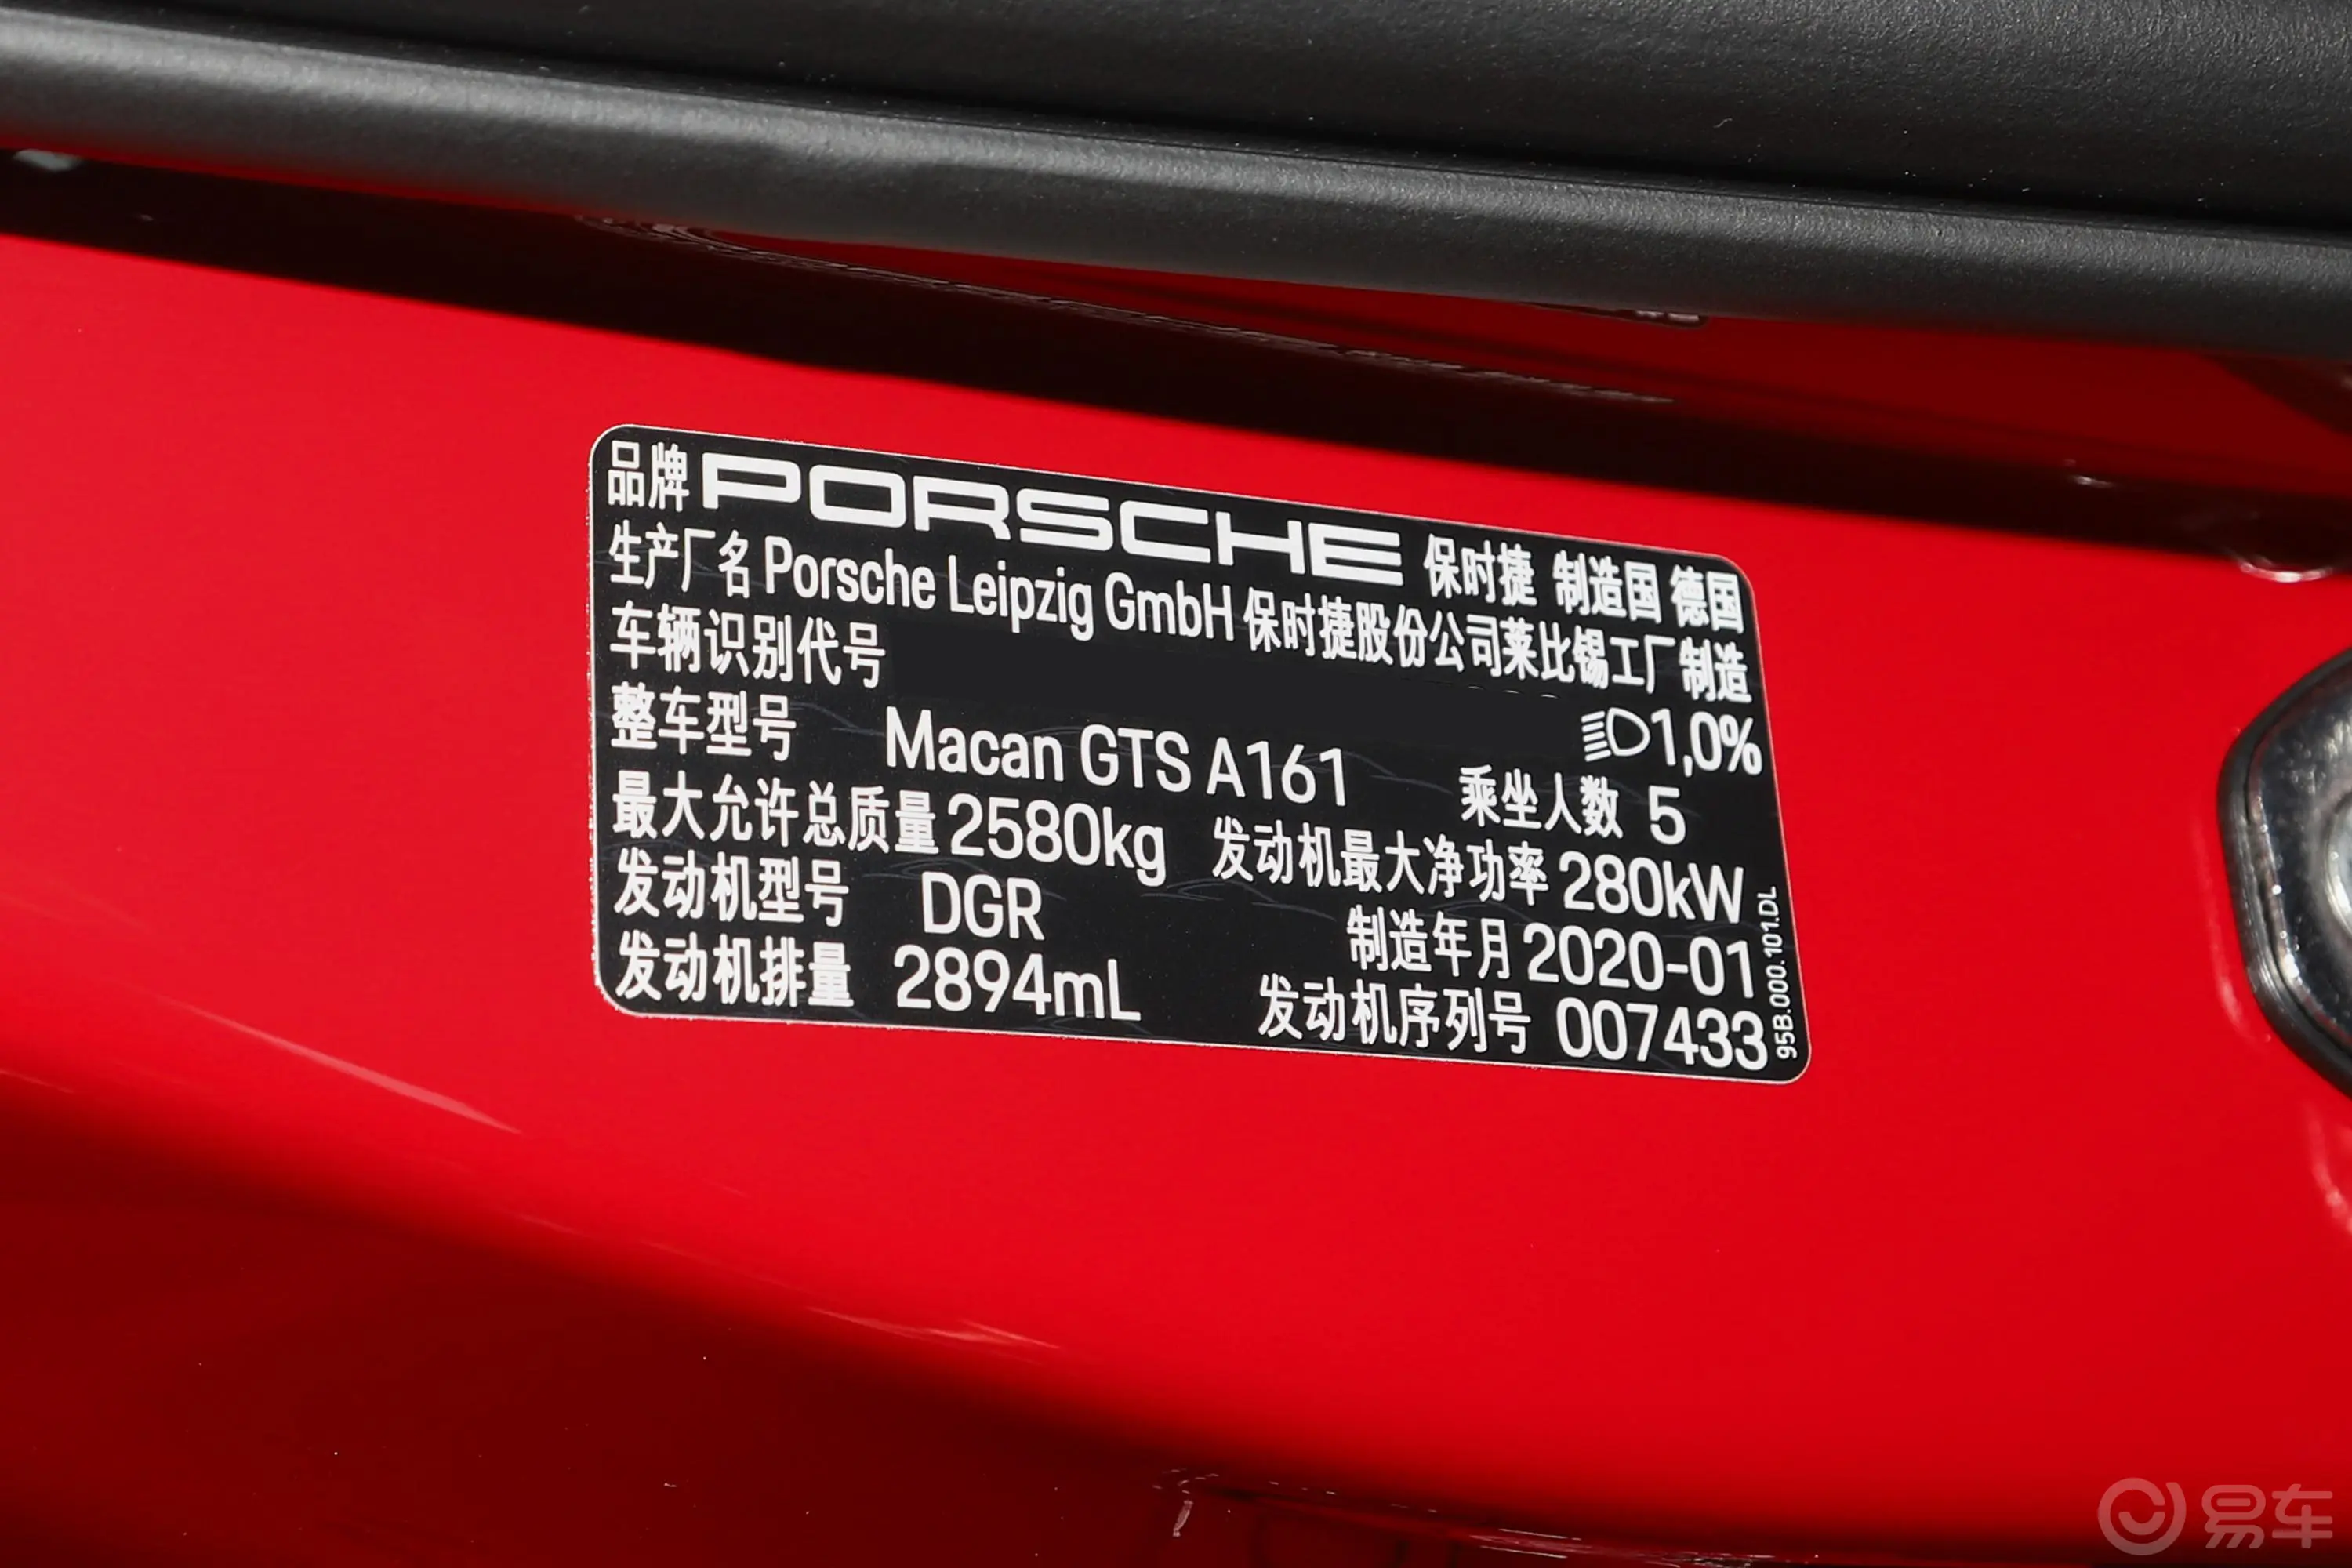 MacanMacan GTS 2.9T车辆信息铭牌